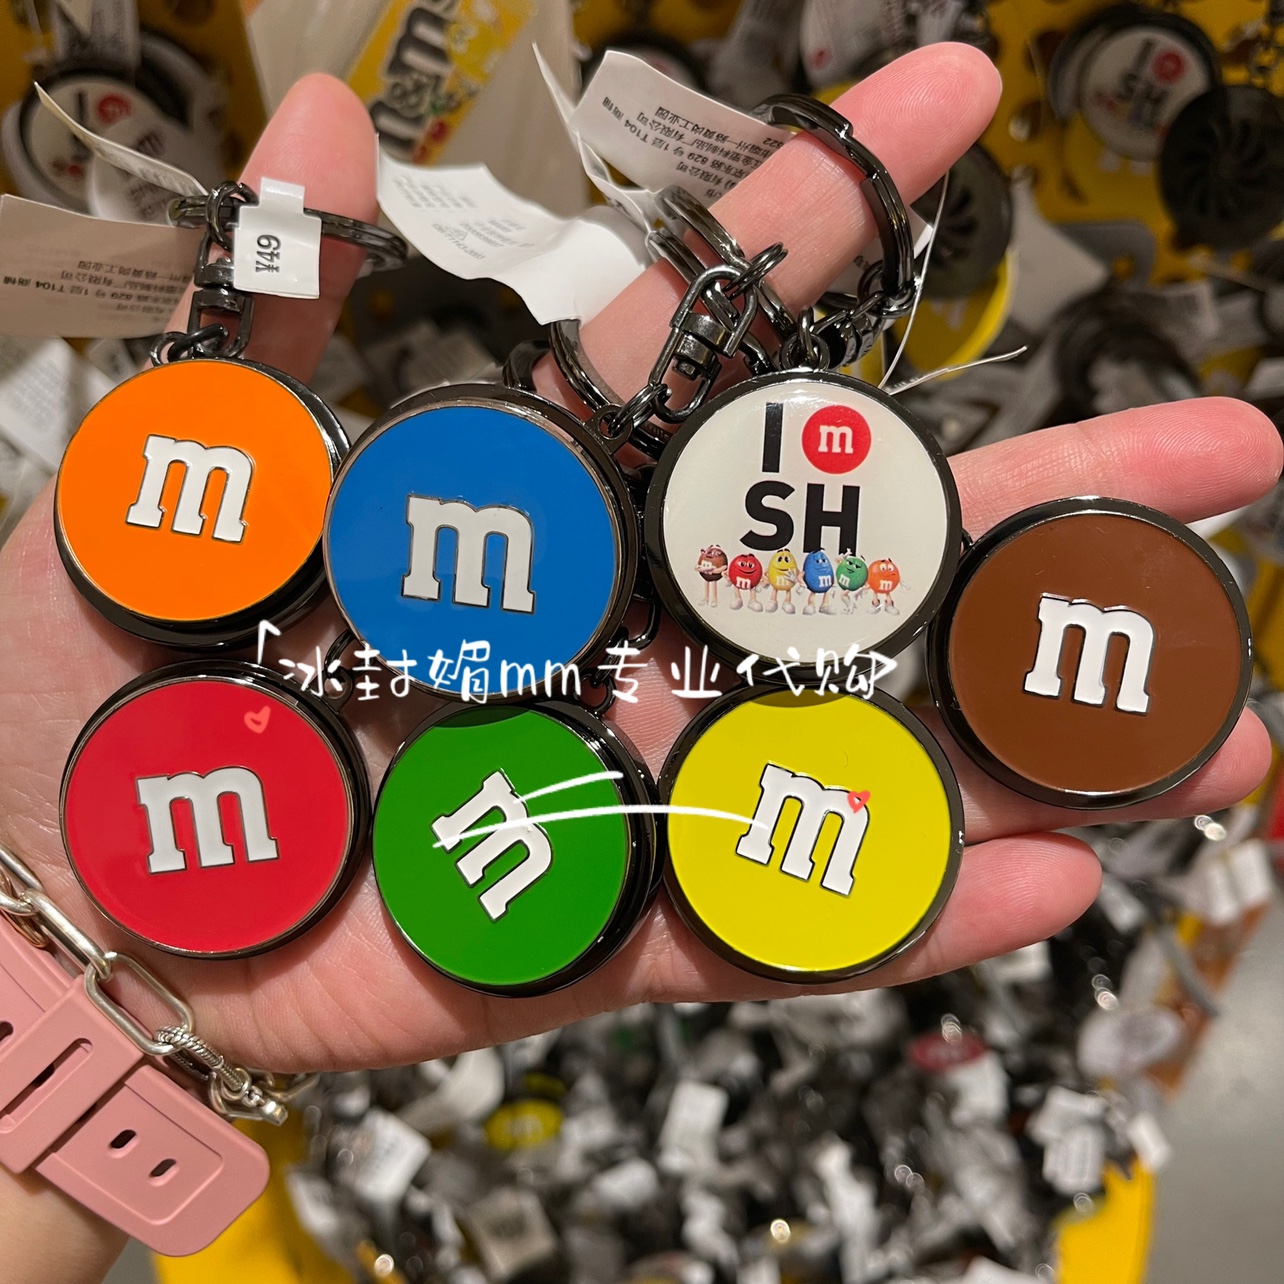 M&M'S豆mms豆上海南京东路商店可旋转圆形钥匙扣红色蓝色绿色等